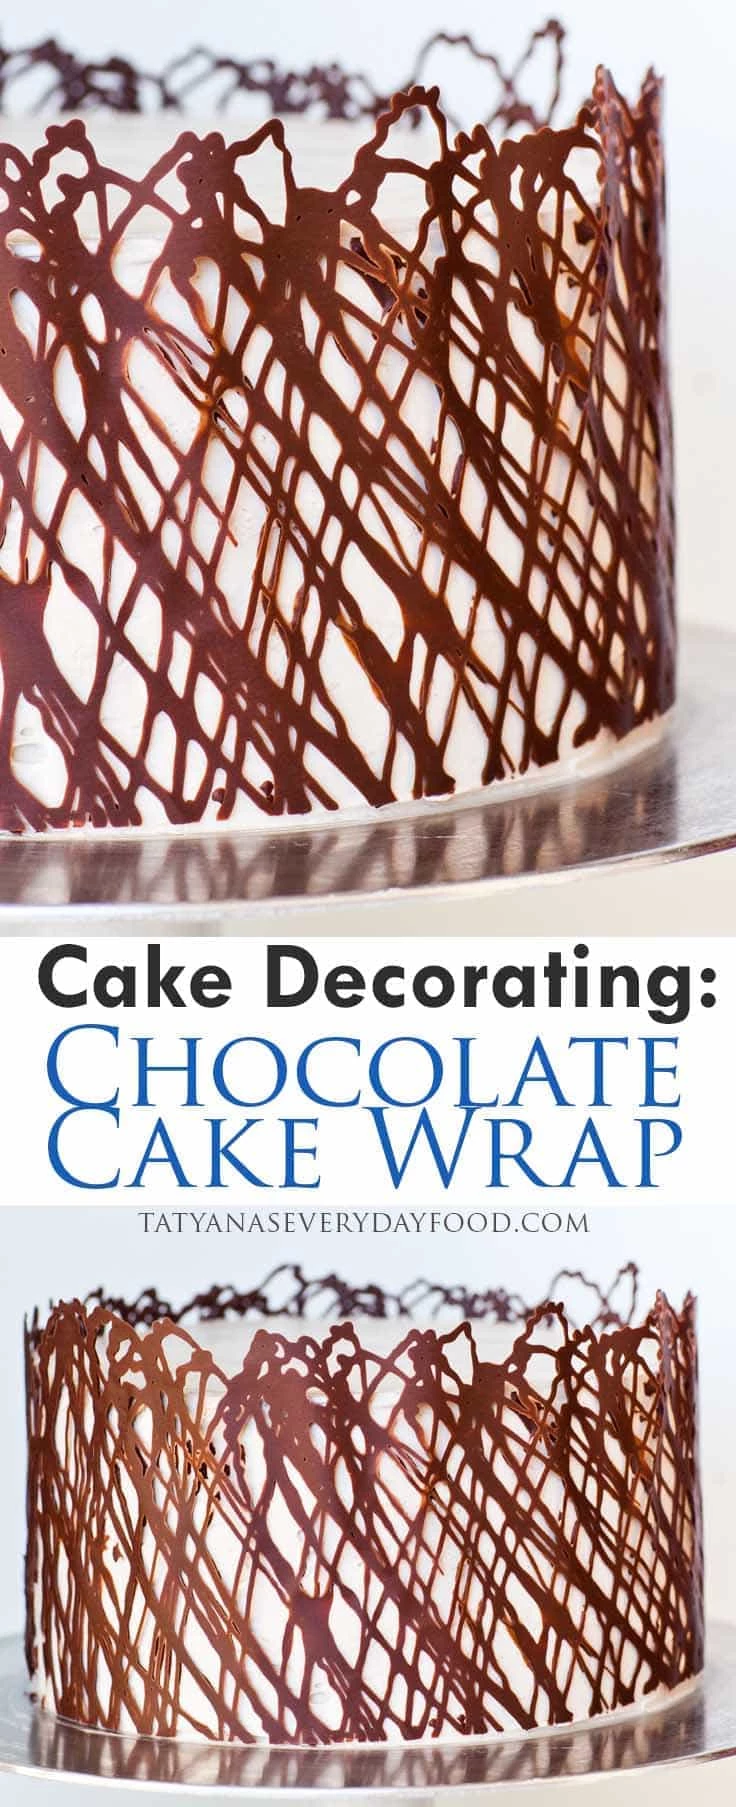 13 Beautifully Decorated Cakes - Cake Decorating - Chocolate Cake Wrap